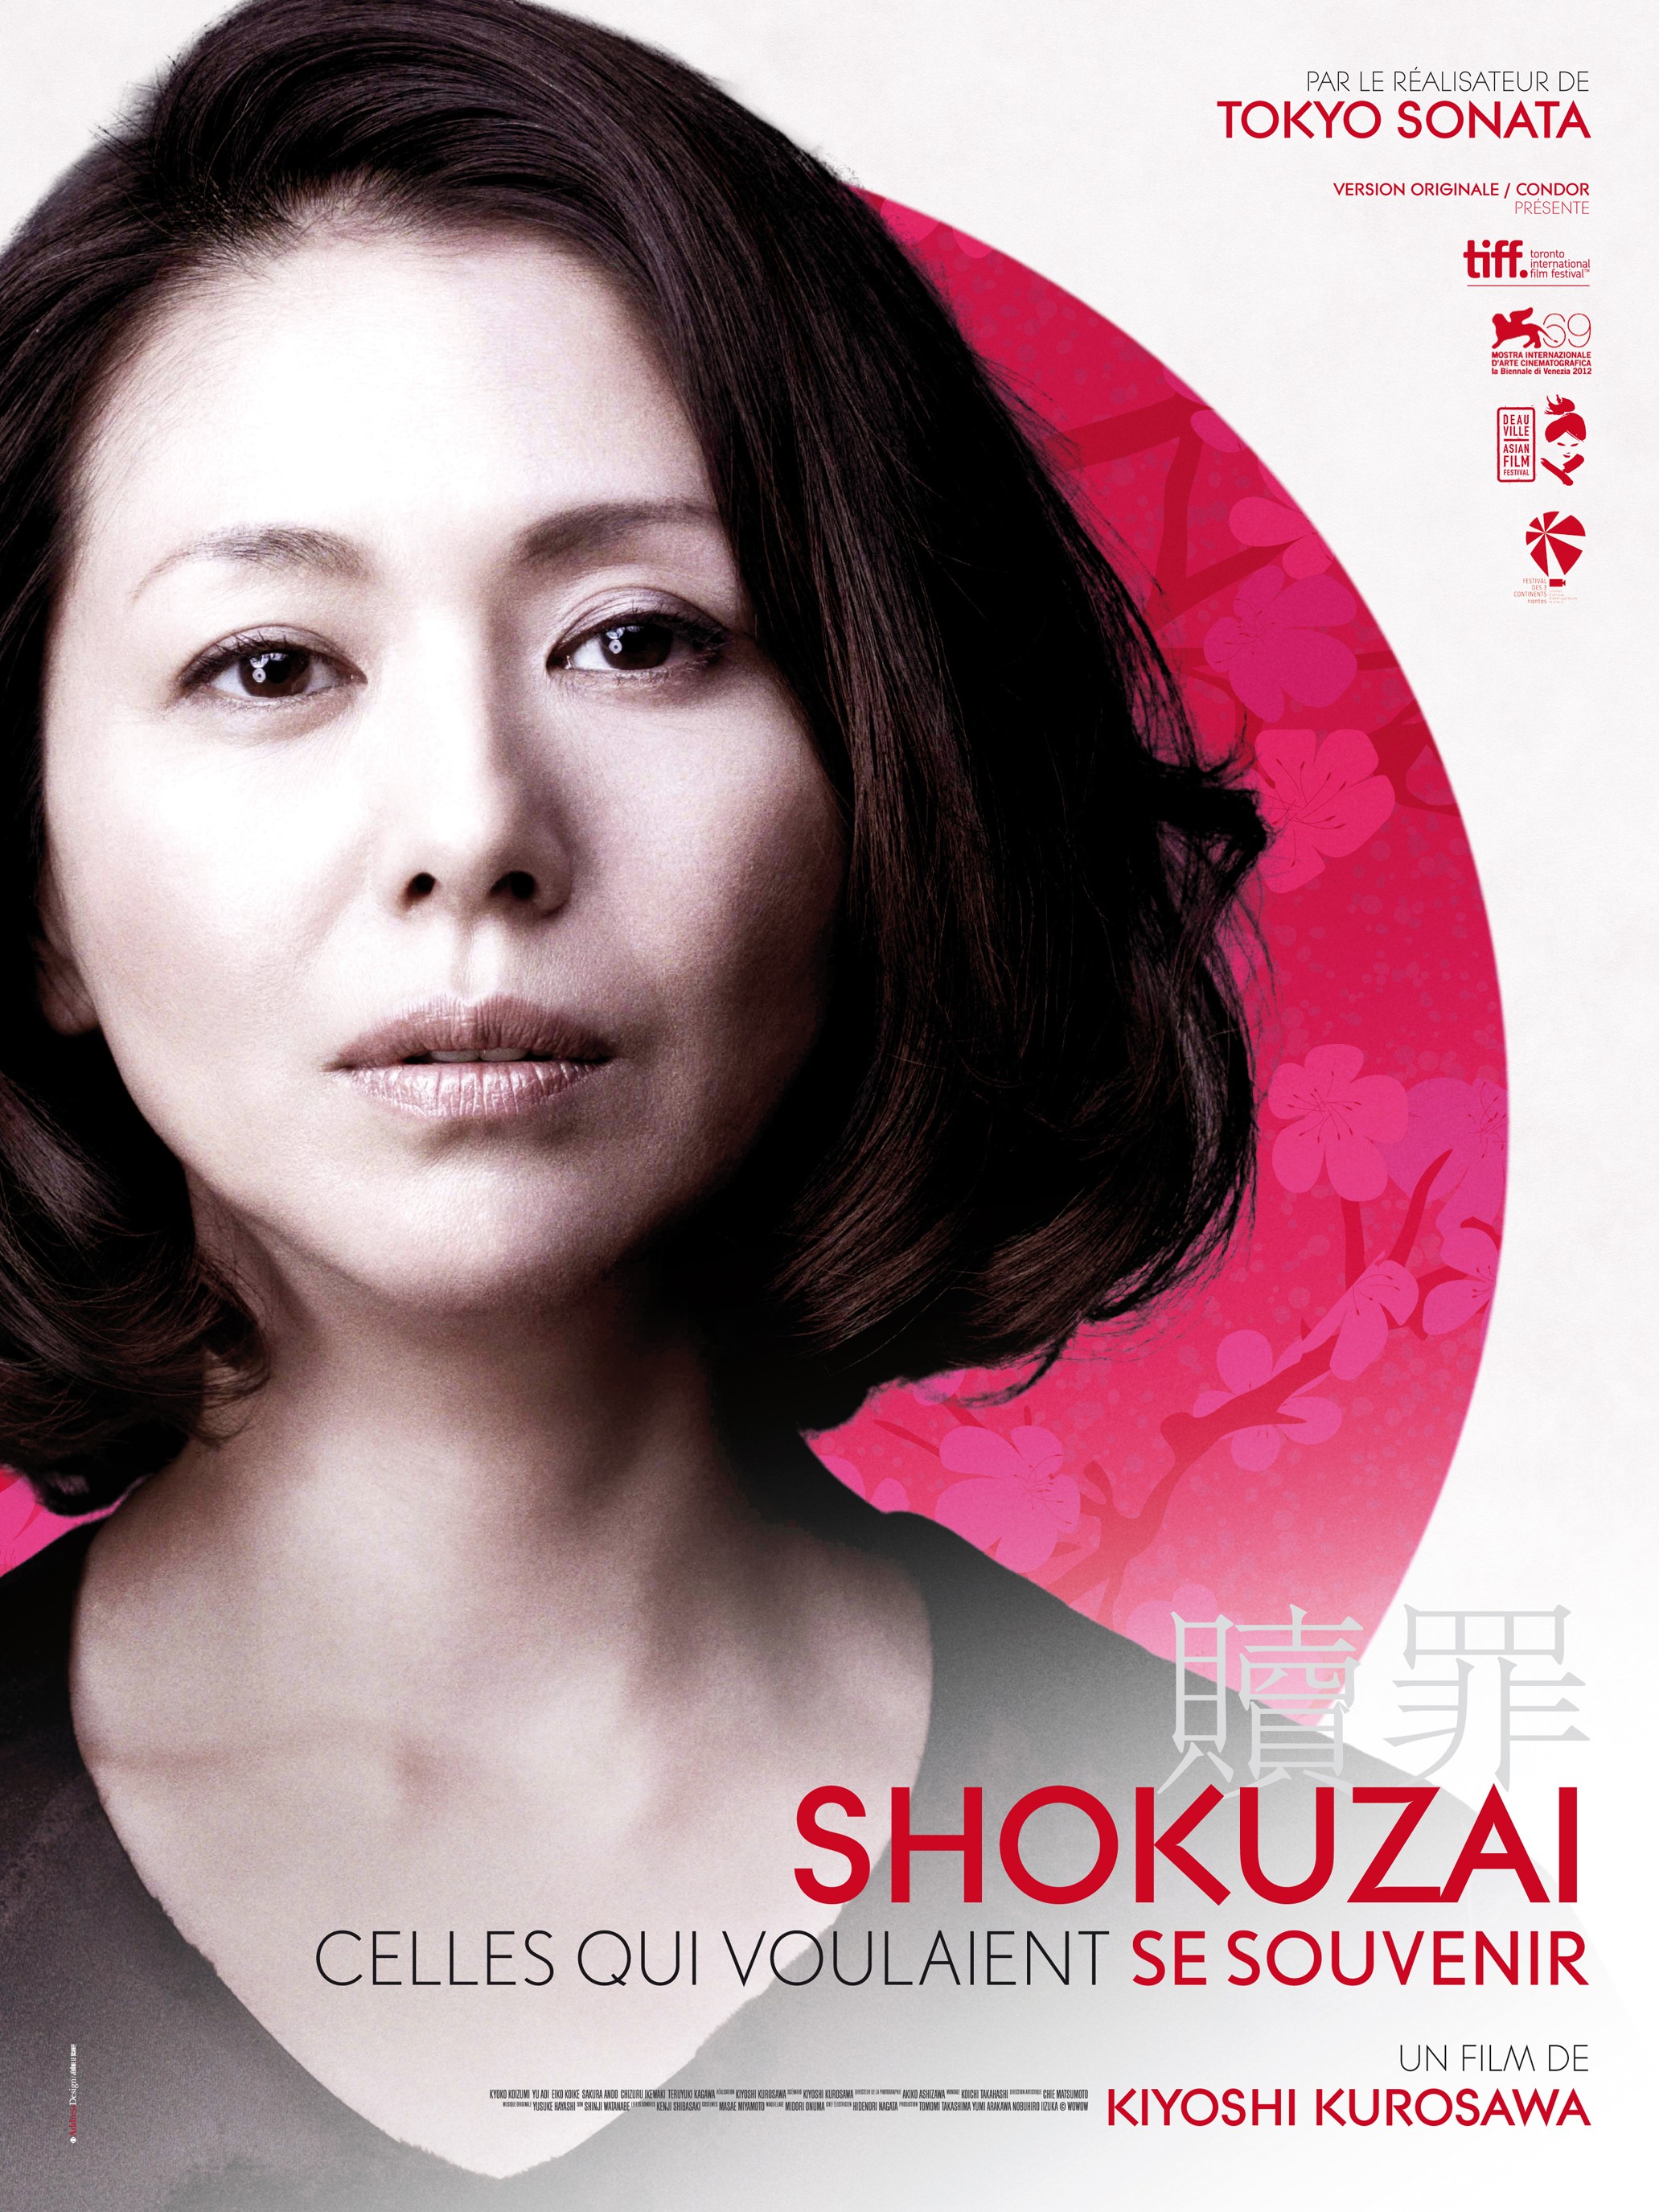 Mega Sized Movie Poster Image for Shokuzai - Celles qui voulaient se souvenir (#2 of 2)